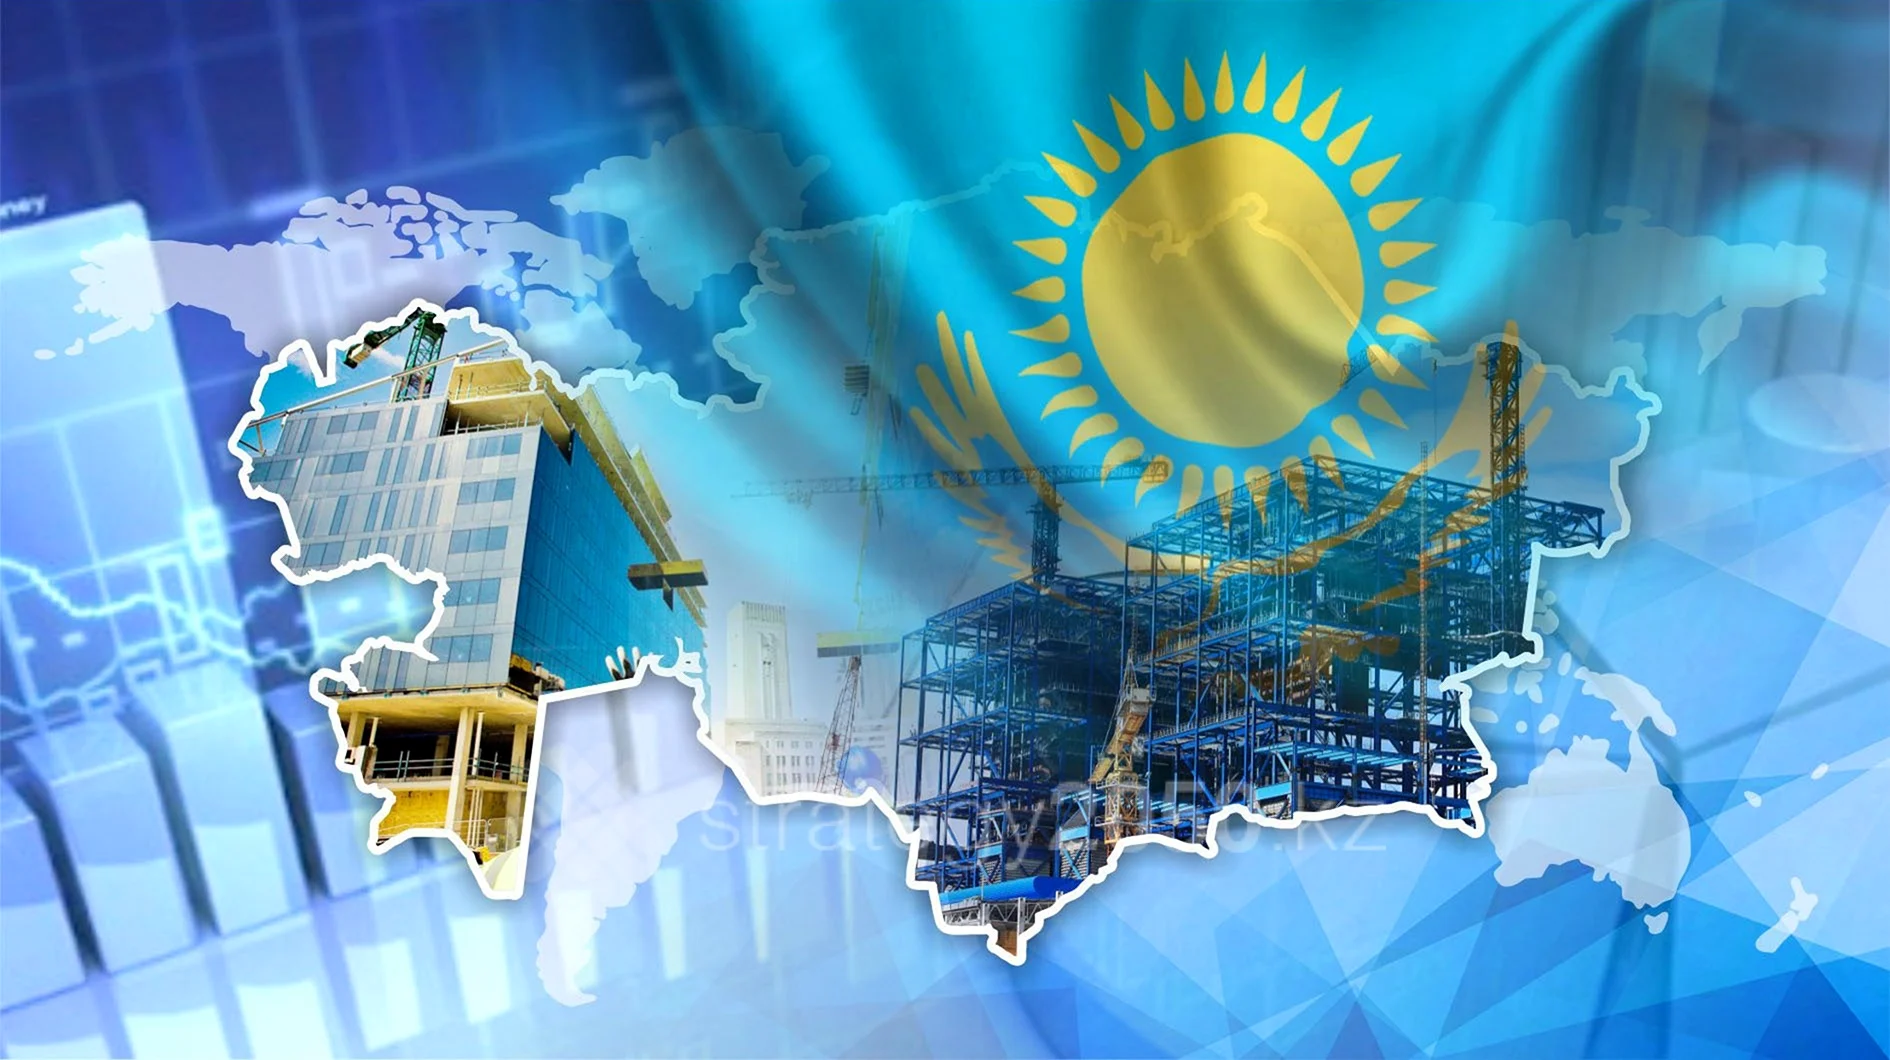 Экономика Казахстана